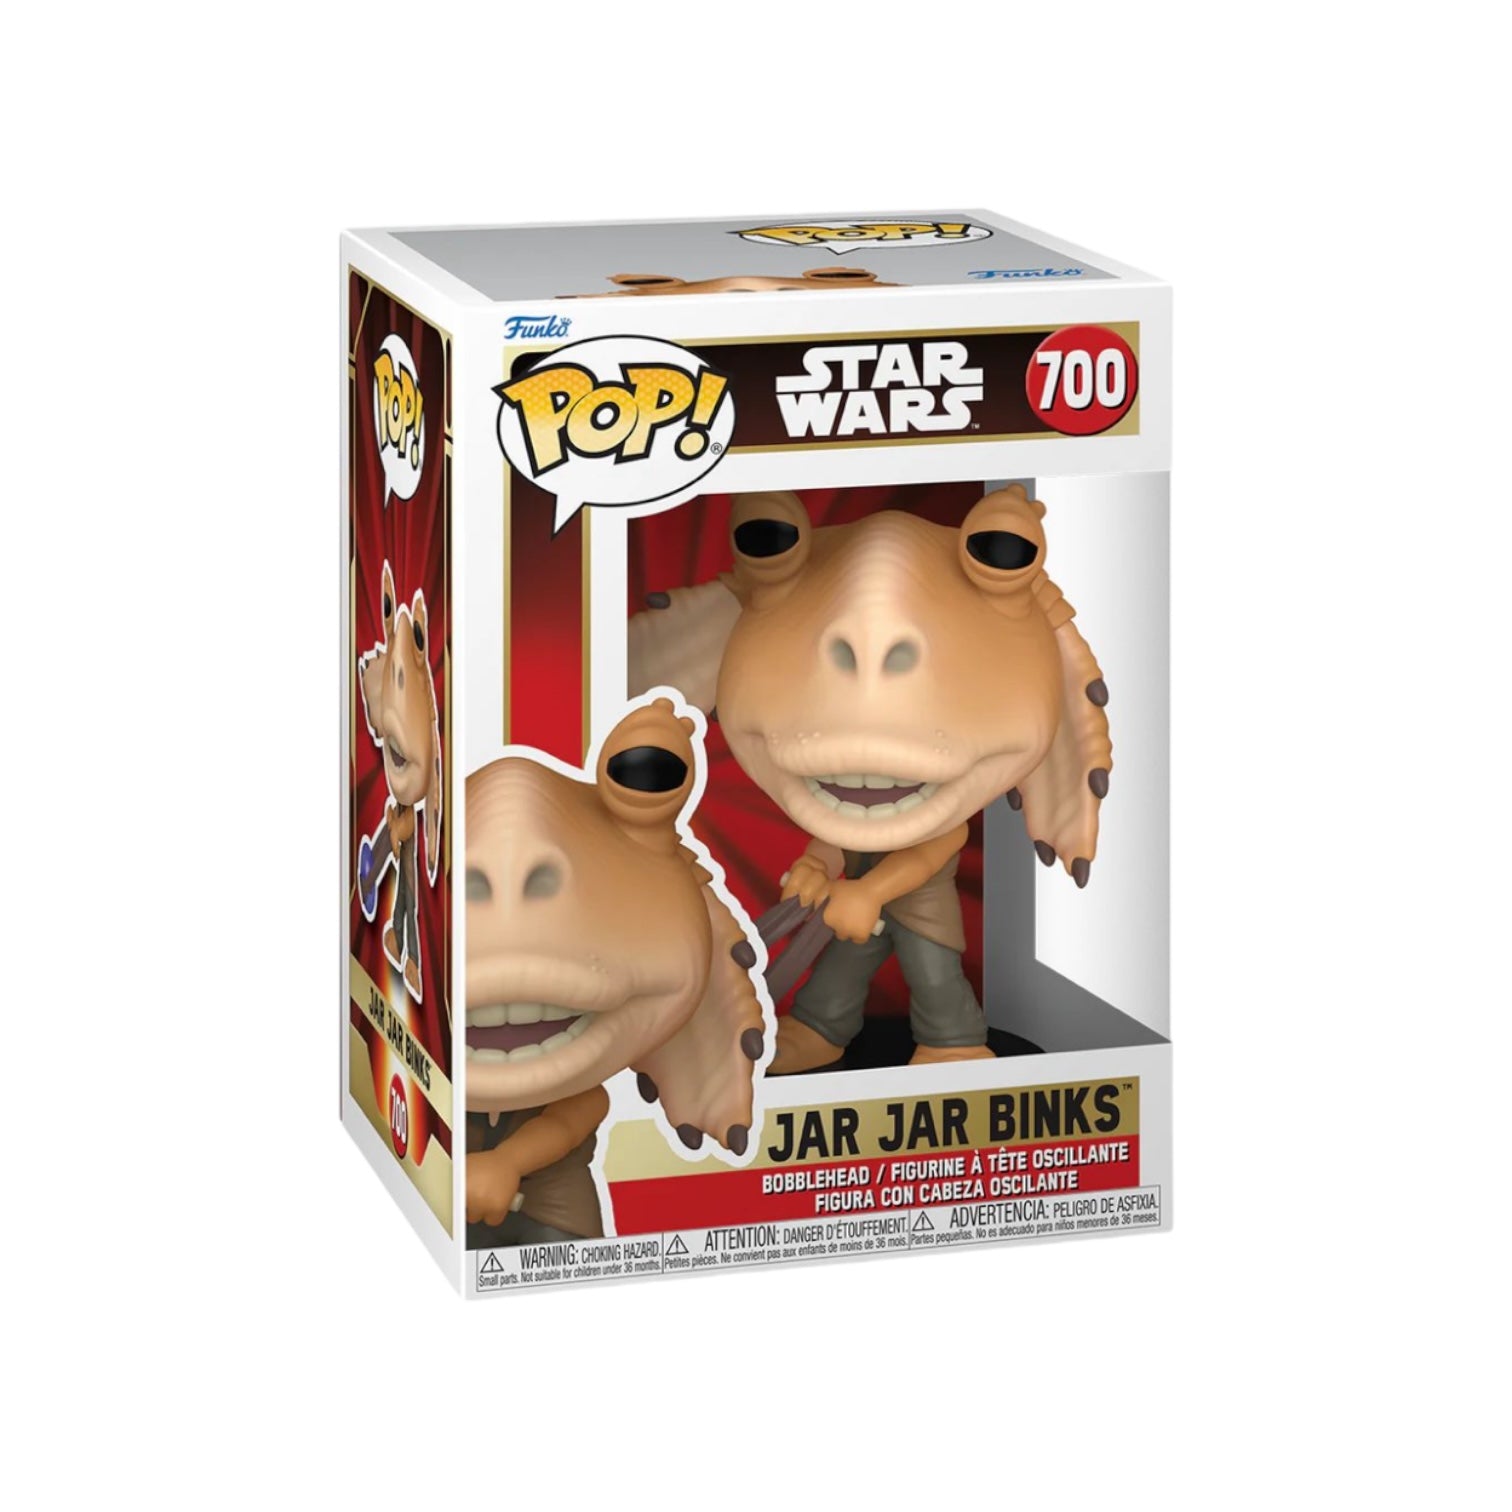 Jar Jar Binks #700 Funko Pop! Star Wars - PREORDER